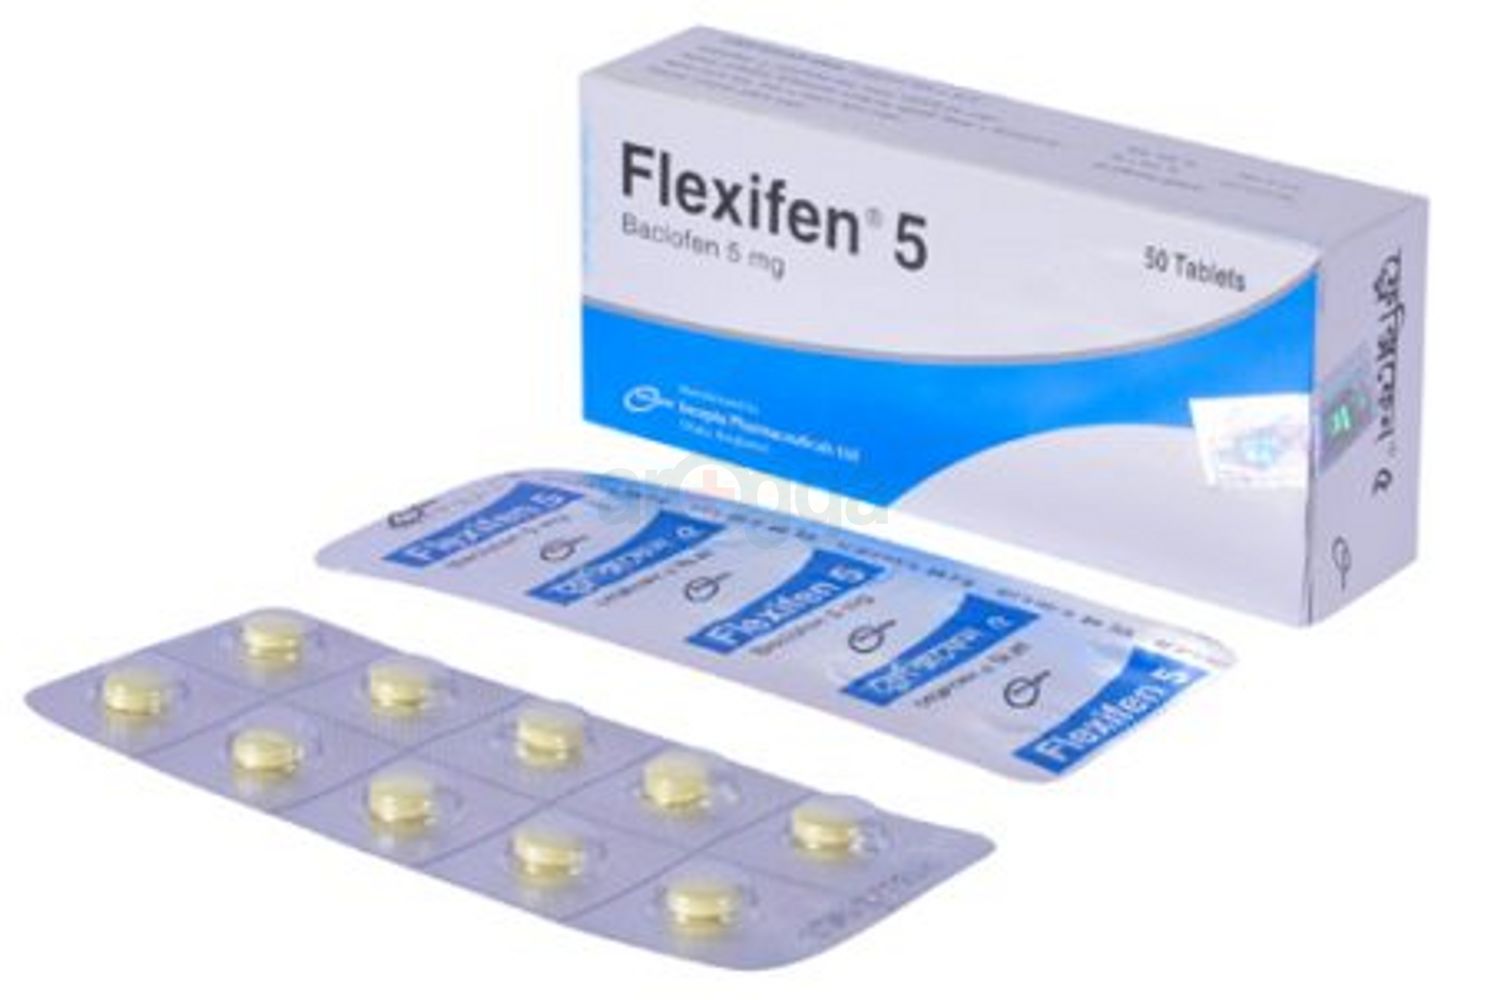 Flexifen 5